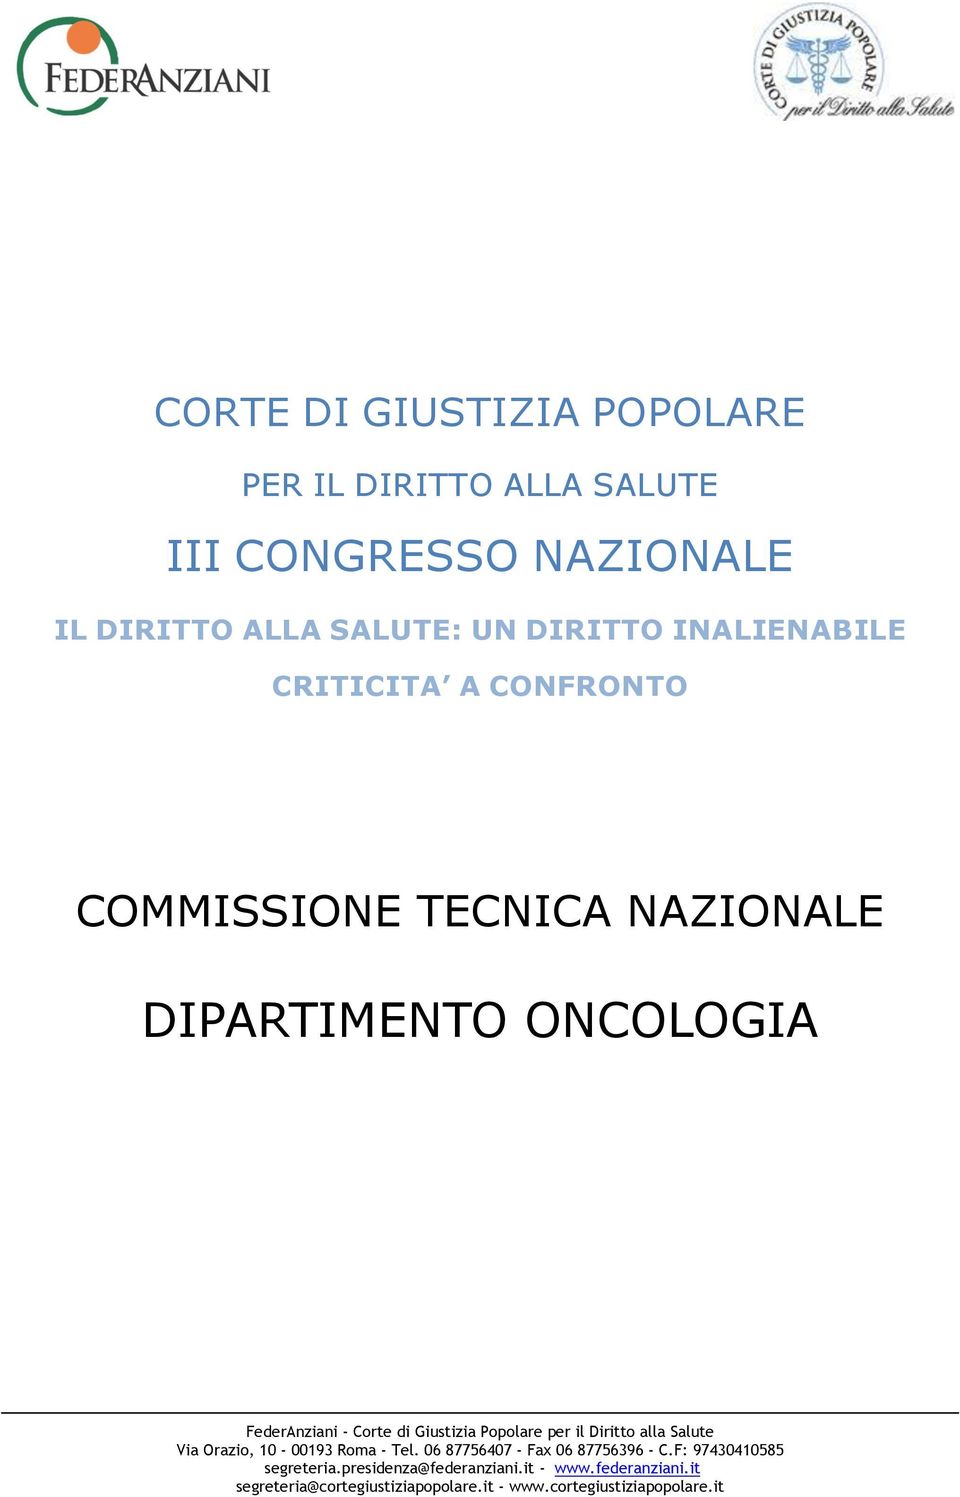 Giustizia Popolare per il Diritto alla Salute Via Orazio, 10-00193 Roma - Tel. 06 87756407 - Fax 06 87756396 - C.